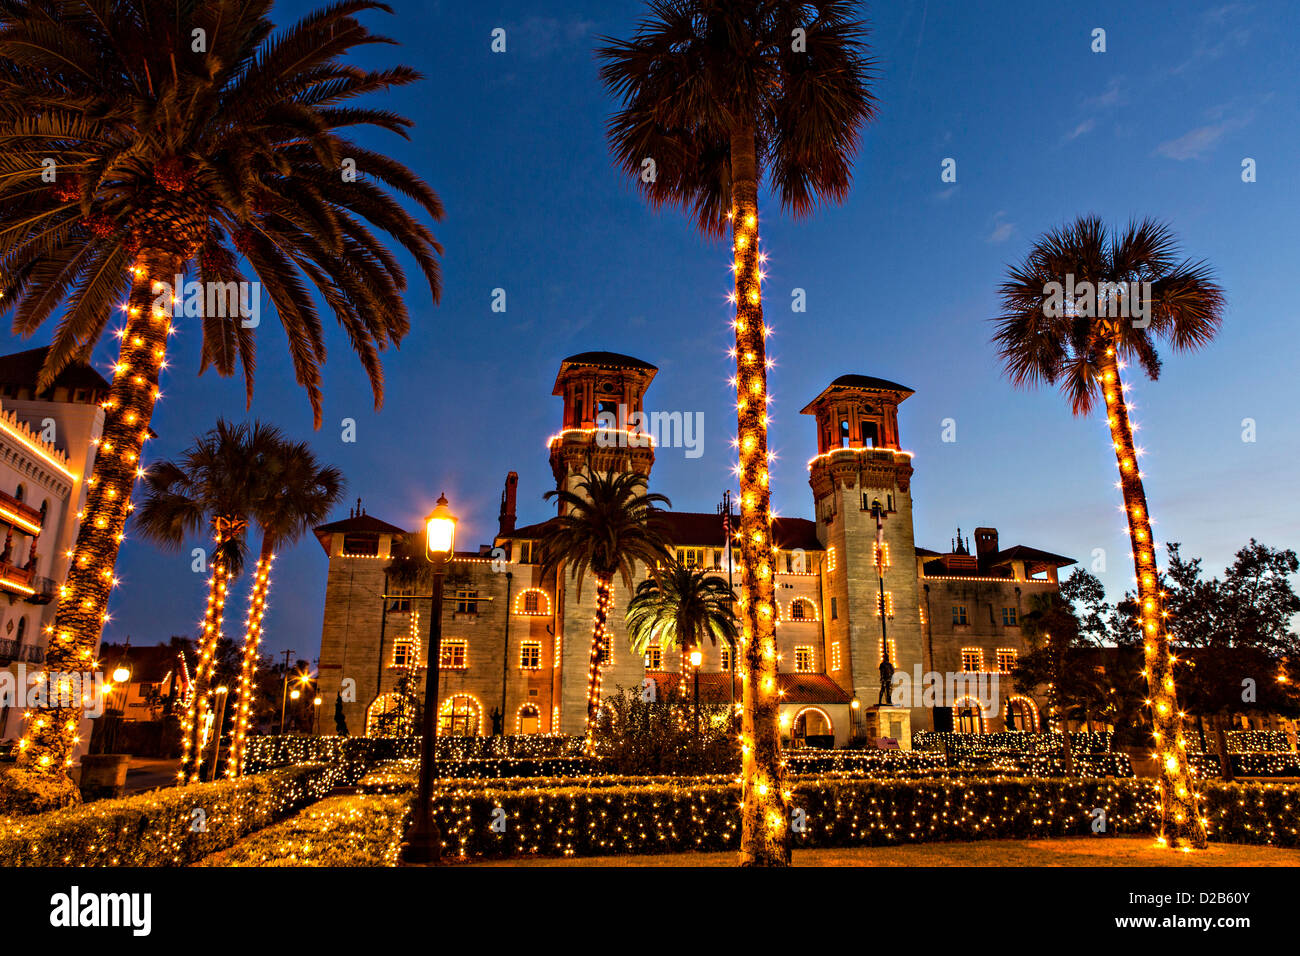 Weihnachtslichter schmücken das Lightner Museum in St. Augustine, Florida. Das Gebäude war ursprünglich das Alcazar Hotel. Stockfoto